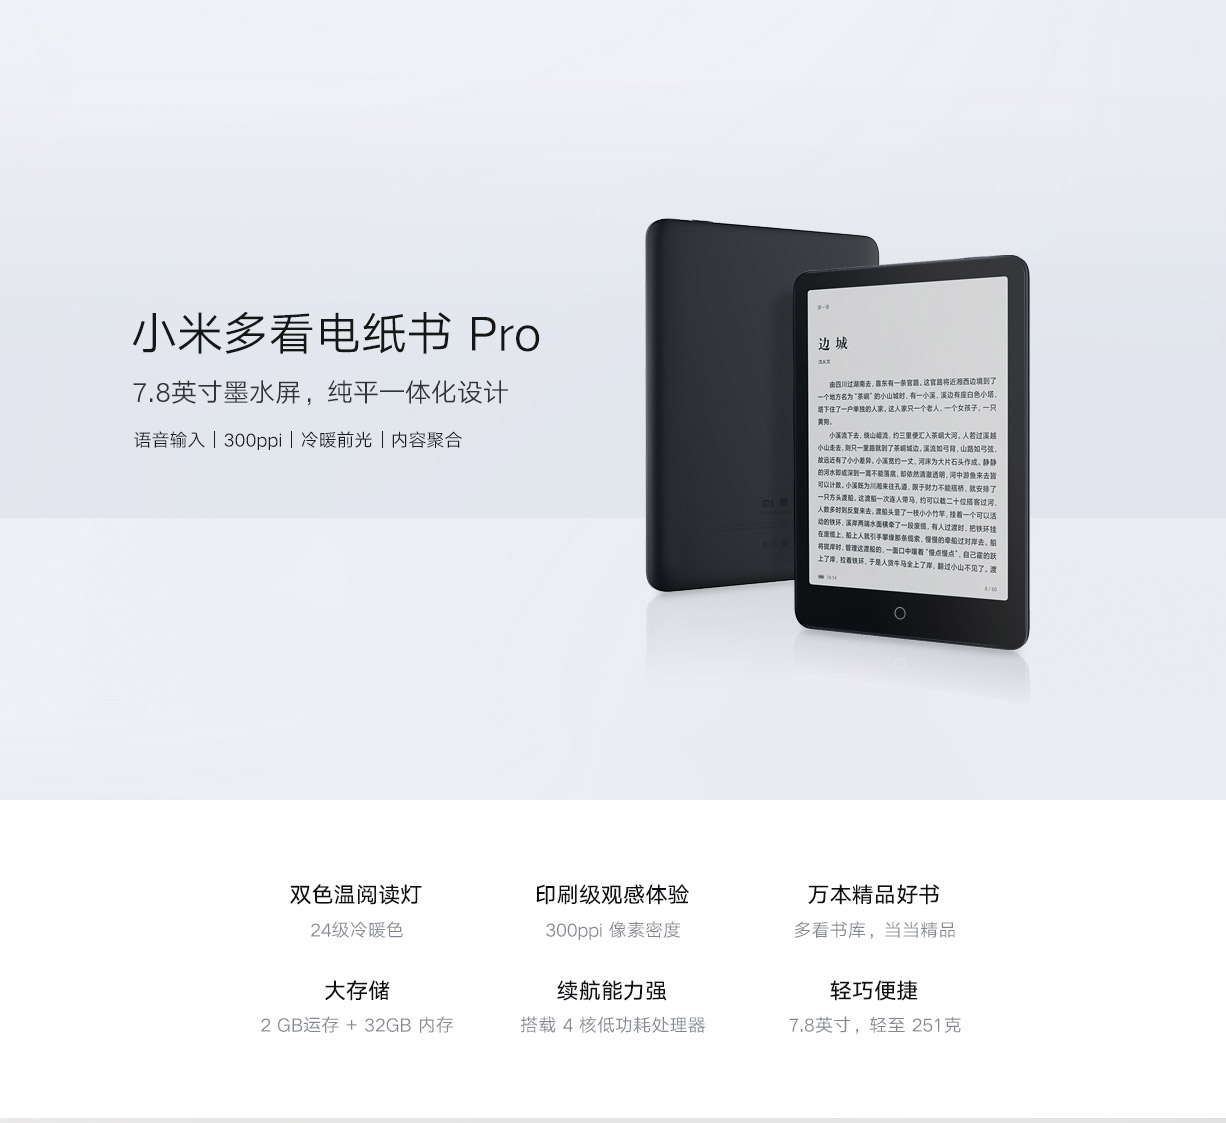 Xiaomi Mi EBook Reader Pro For daily - Technical Feedback